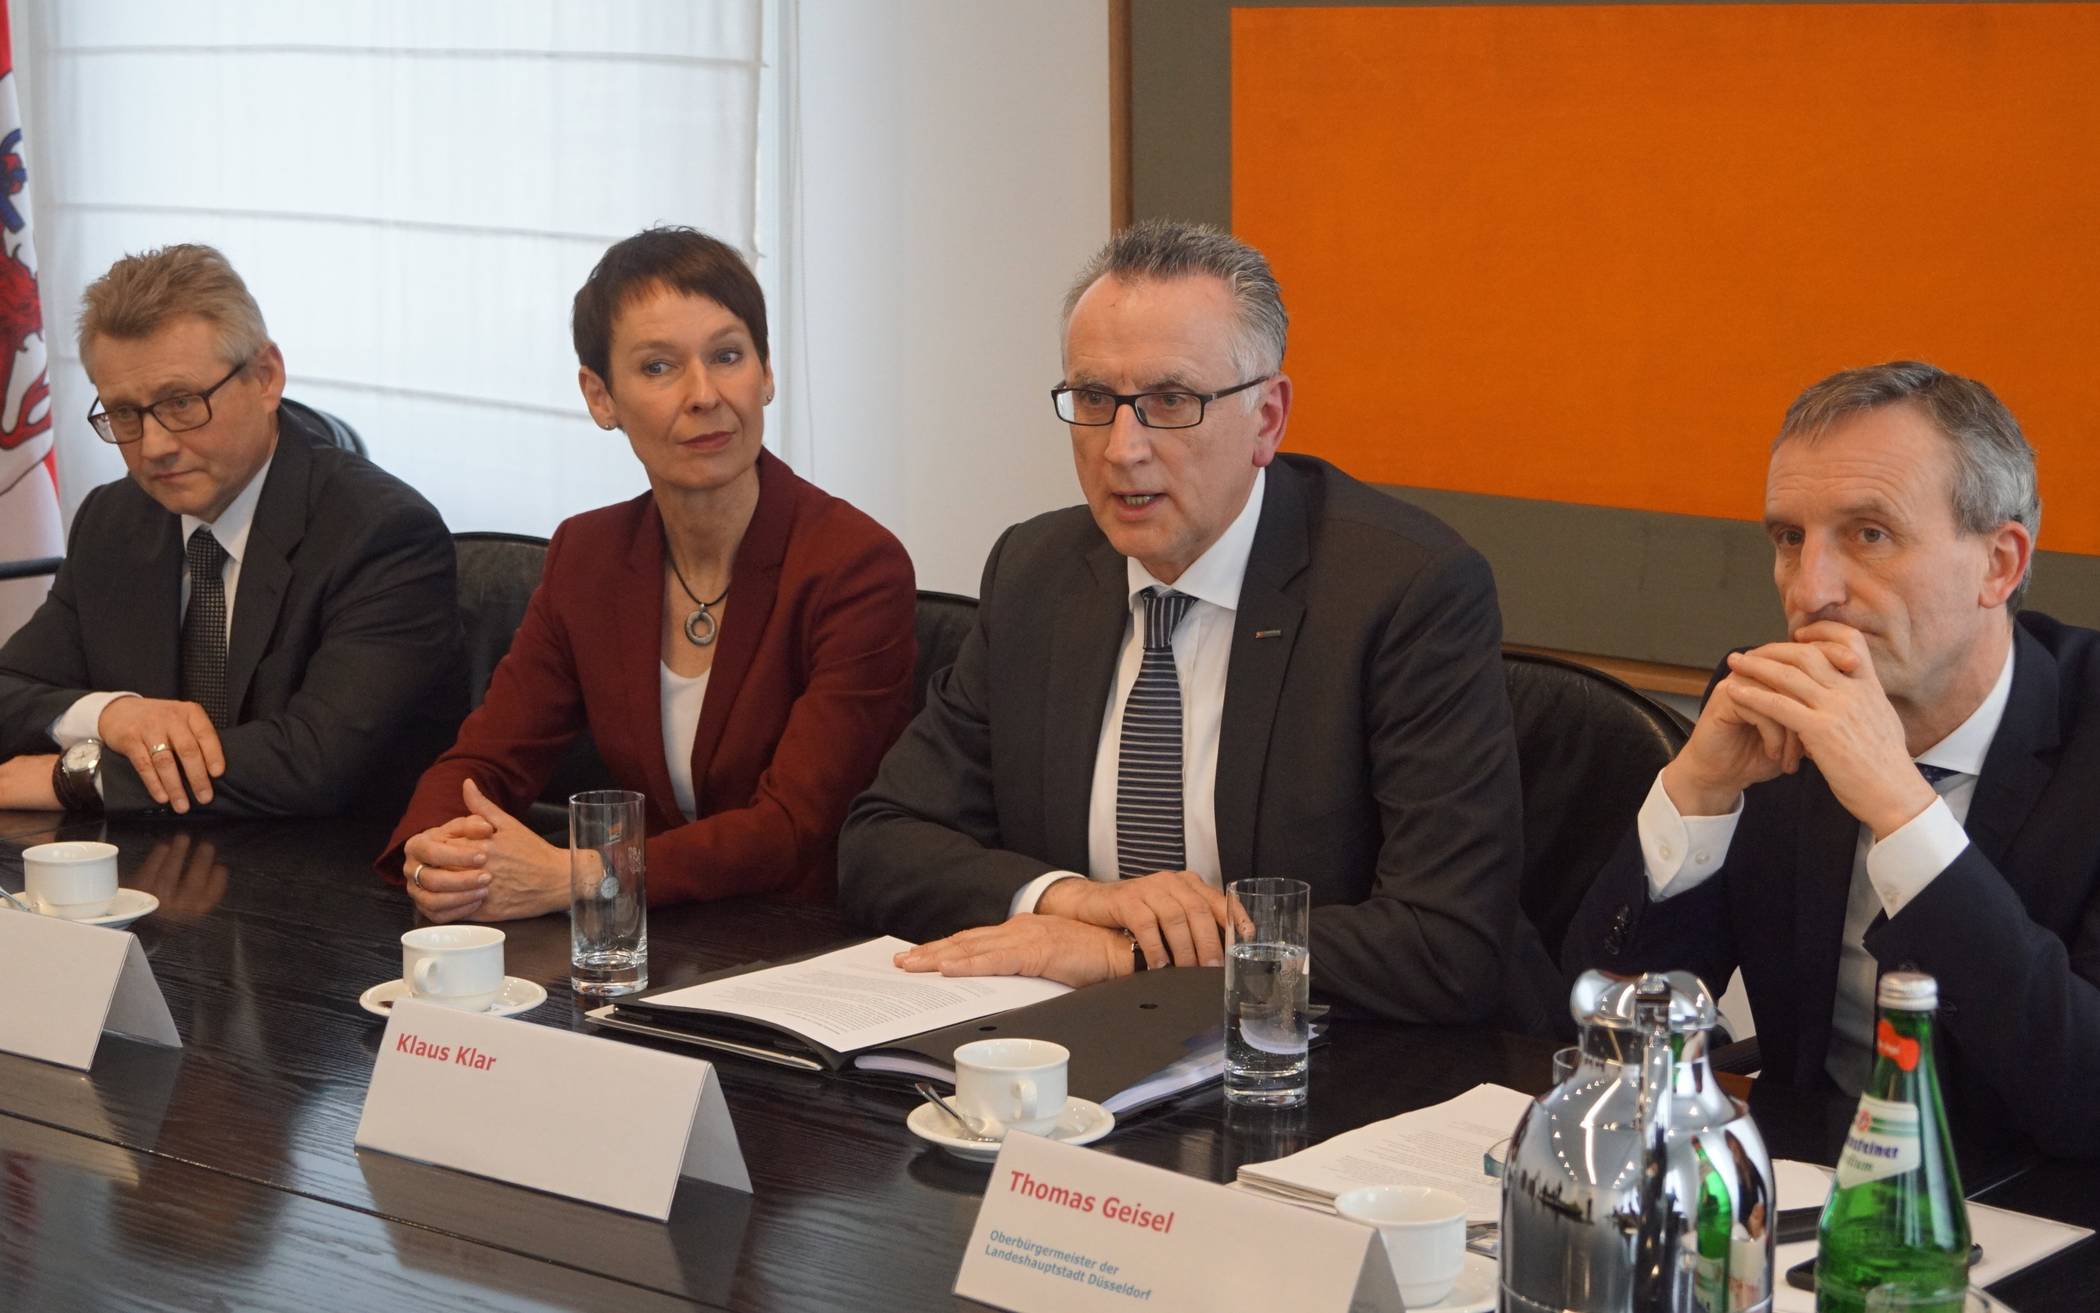  Von rechts: Aufsichtsratsvorsitzender OB Thomas Geisel mit den Rheinbahnvorständen Klaus Klar, Sylvia Lier und Michael Richarz.  